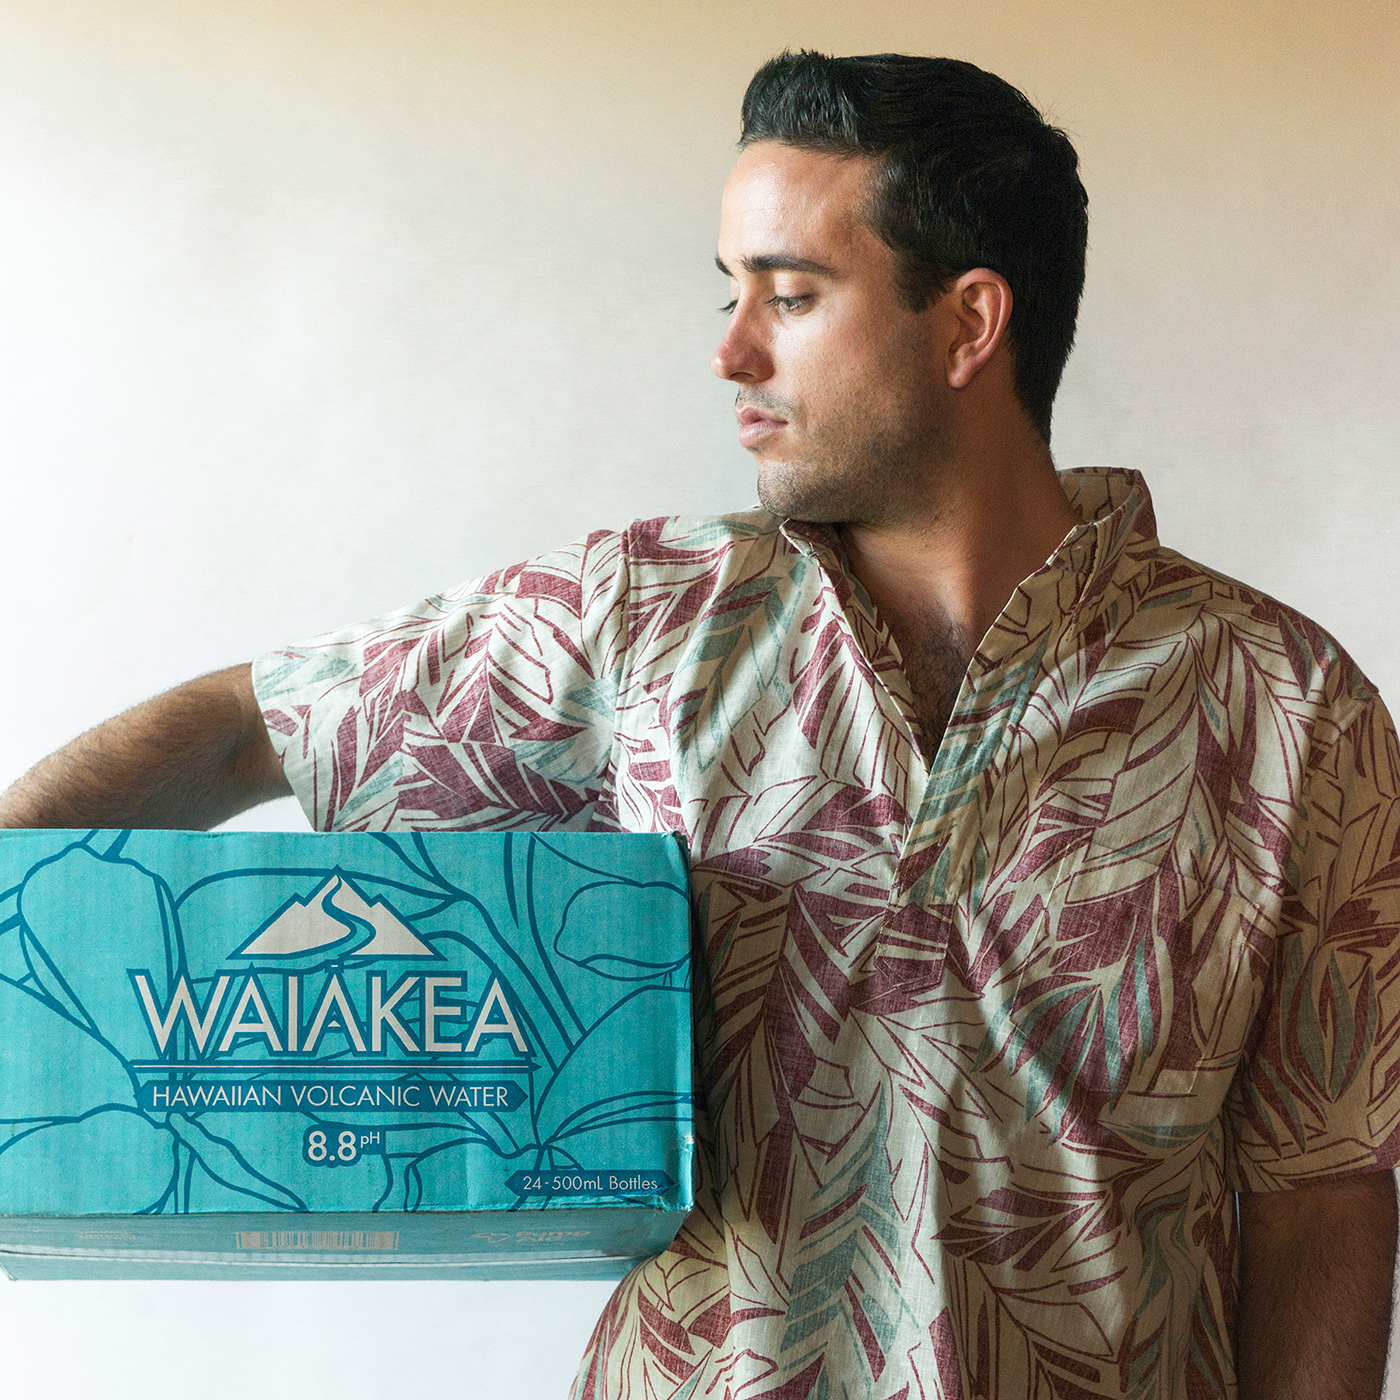 man holding case of WAIĀKEA